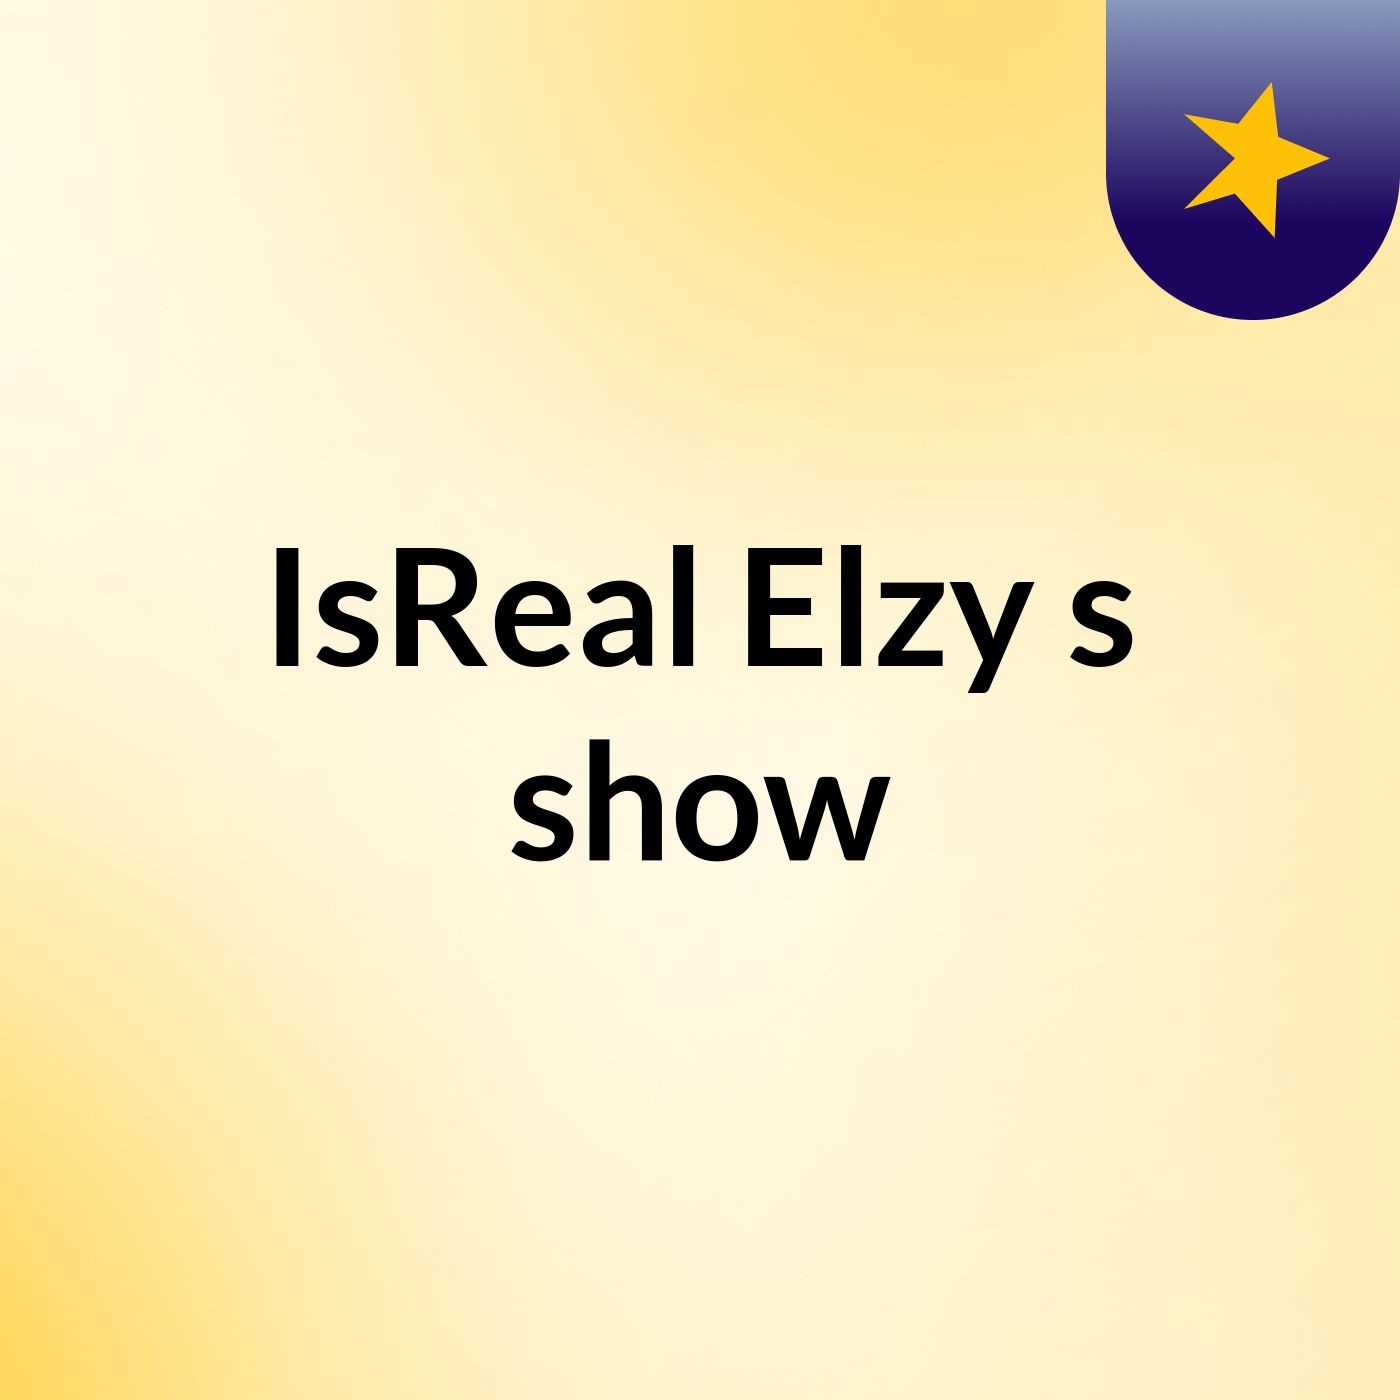 Episode 7 - IsReal Elzy's show